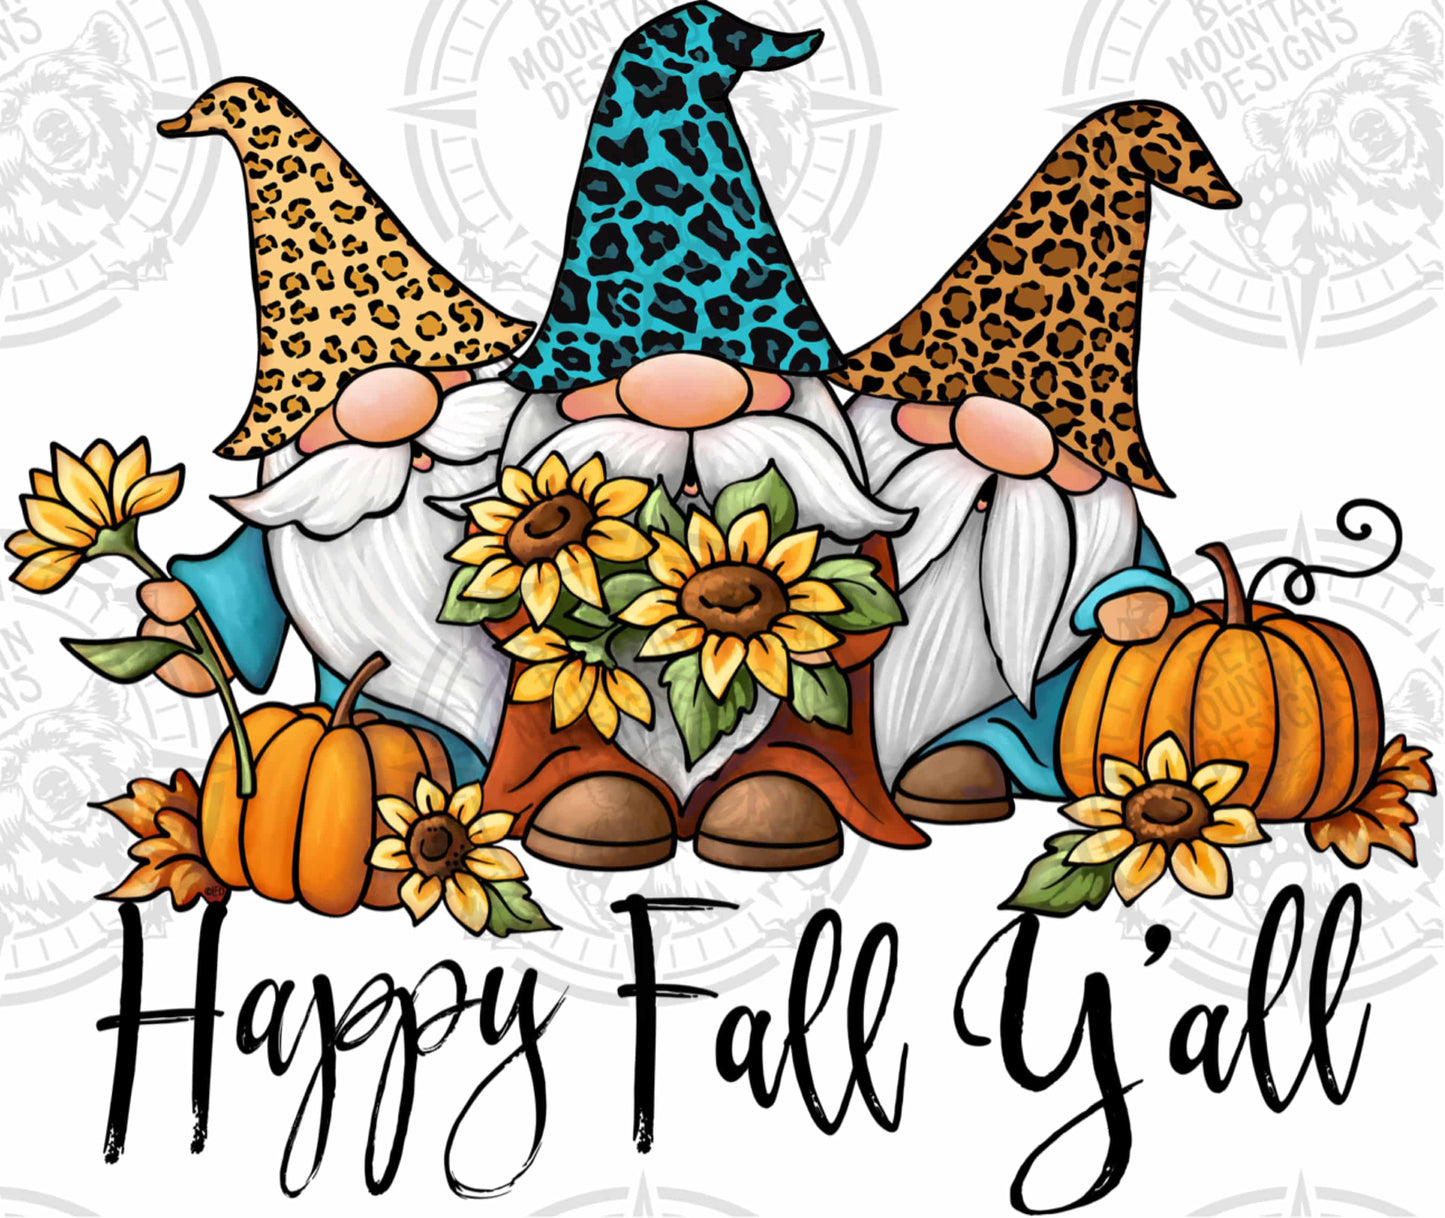 Happy Fall Y’all - Gnomes